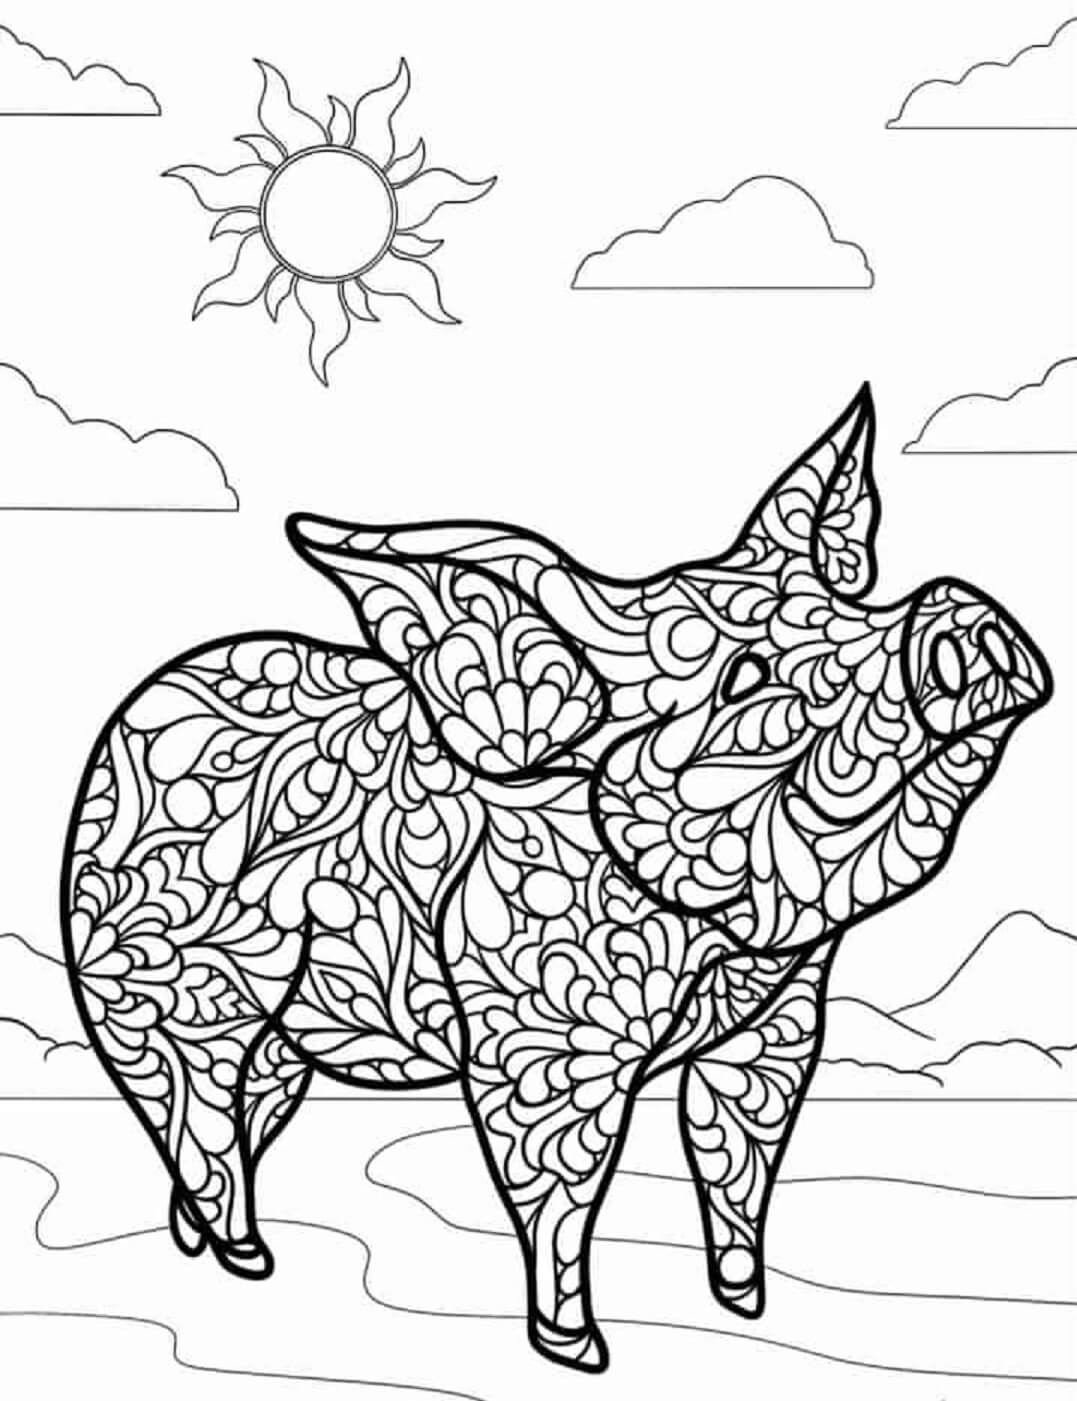 Mandala Pig With Sun Coloring Page Mandalas